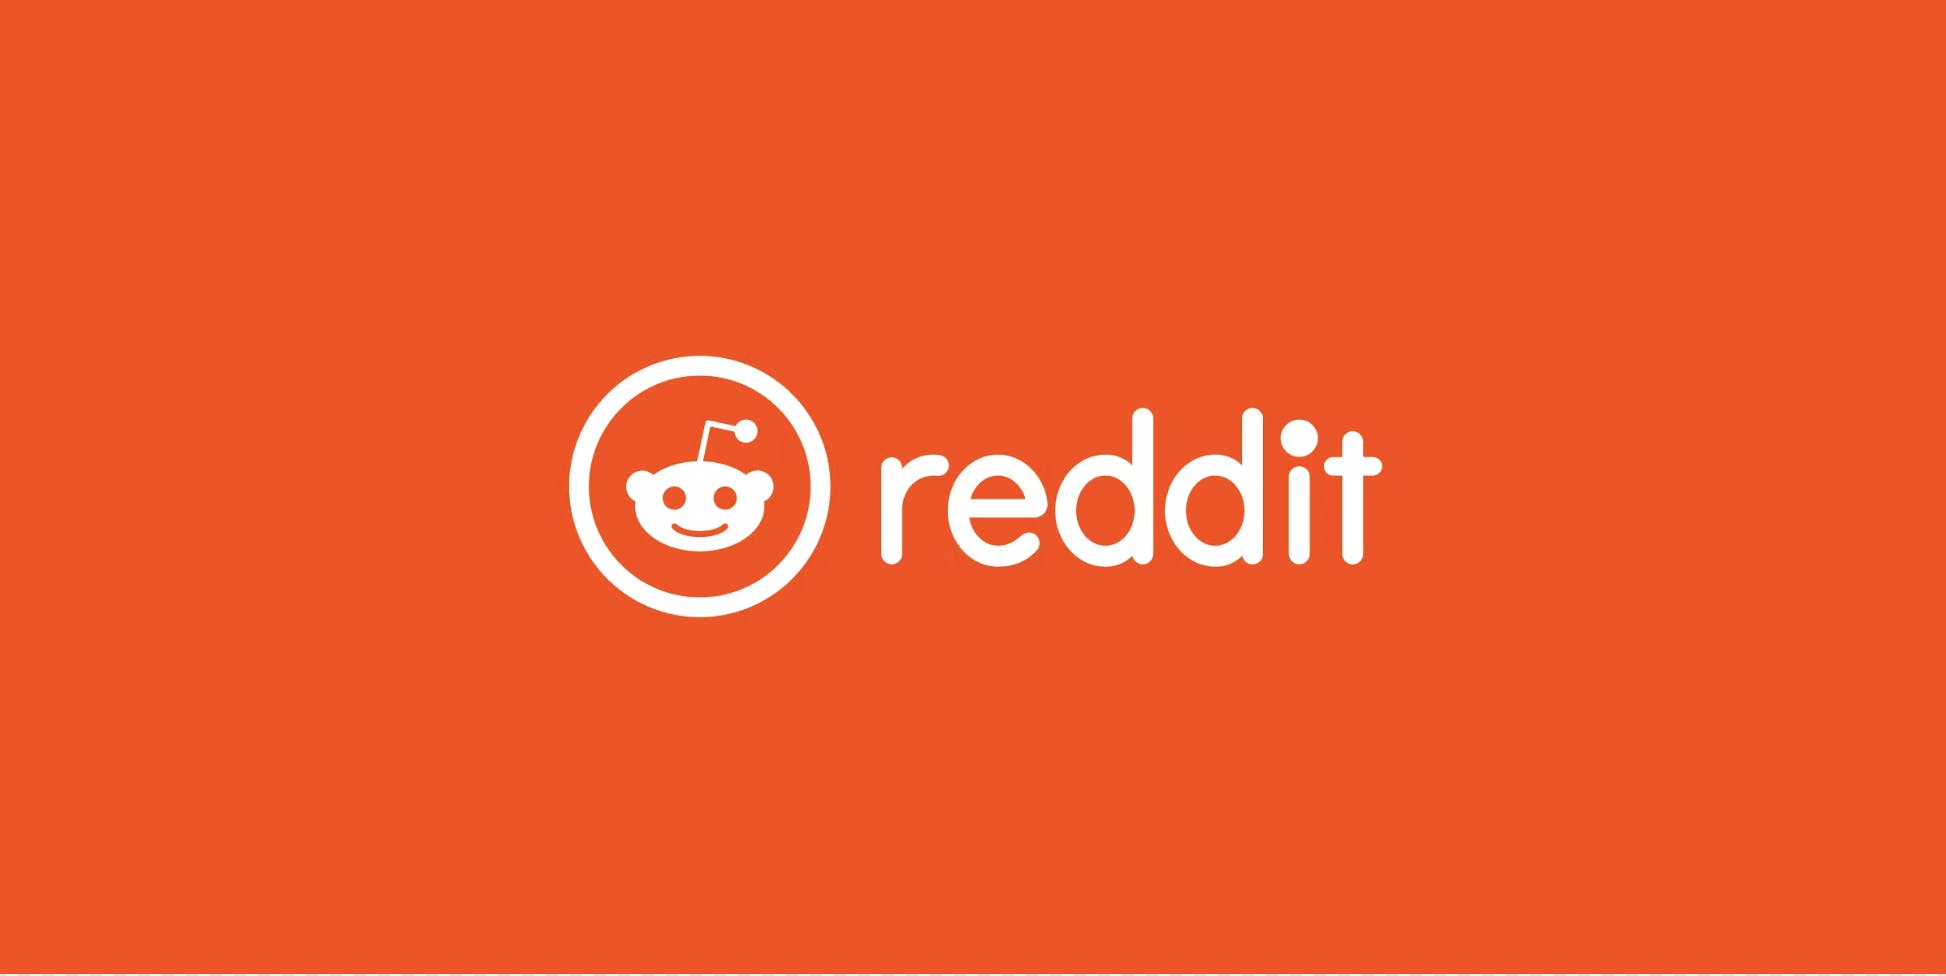 Report: Reddit Business Breakdown & Founding Story